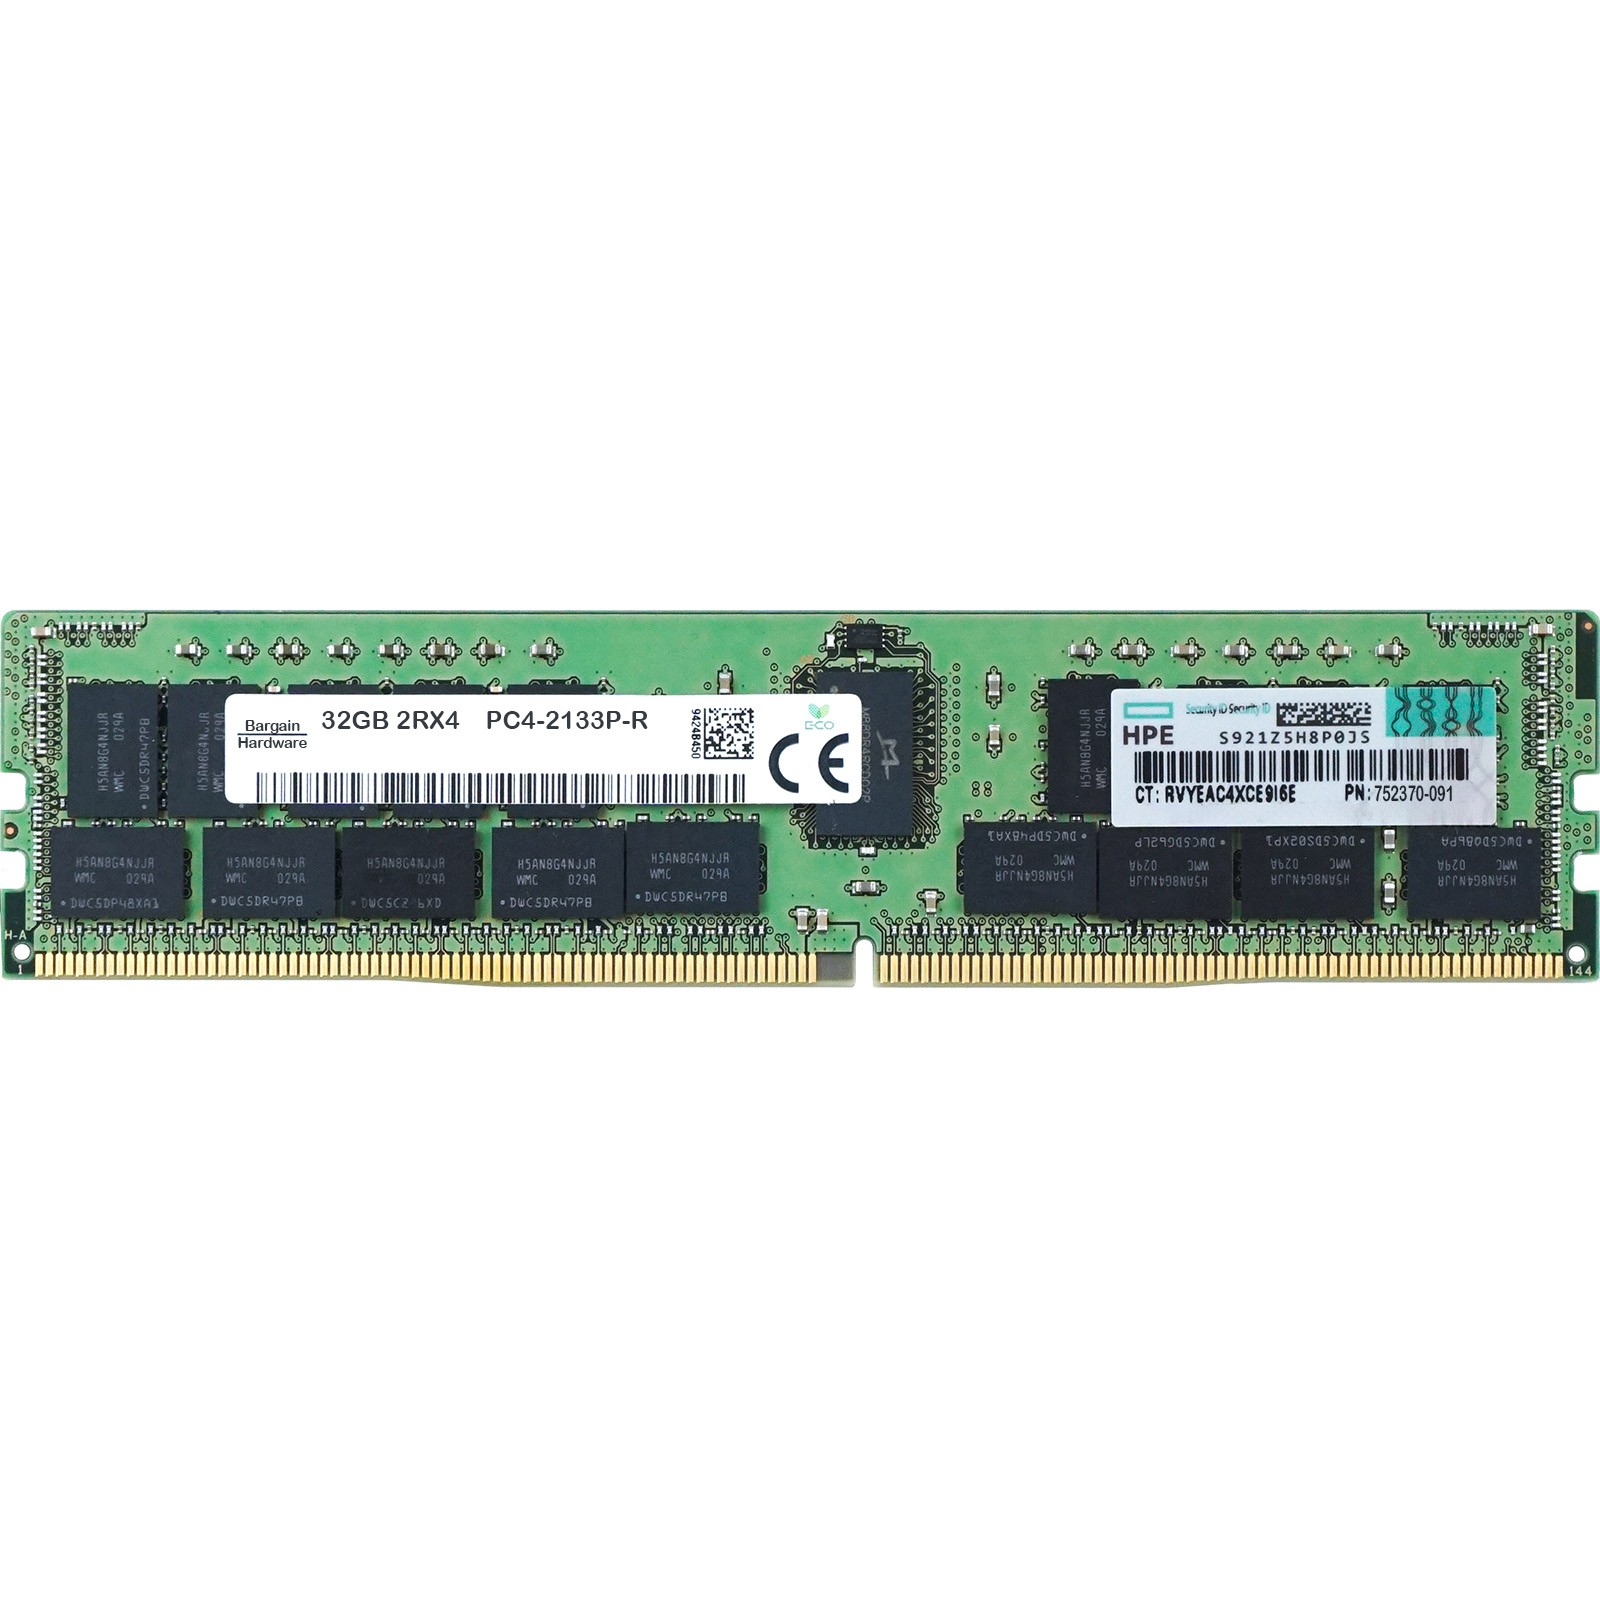 HP (752370-091) - 32GB PC4-17000P-R (2RX4, DDR4-2133MHz) RAM